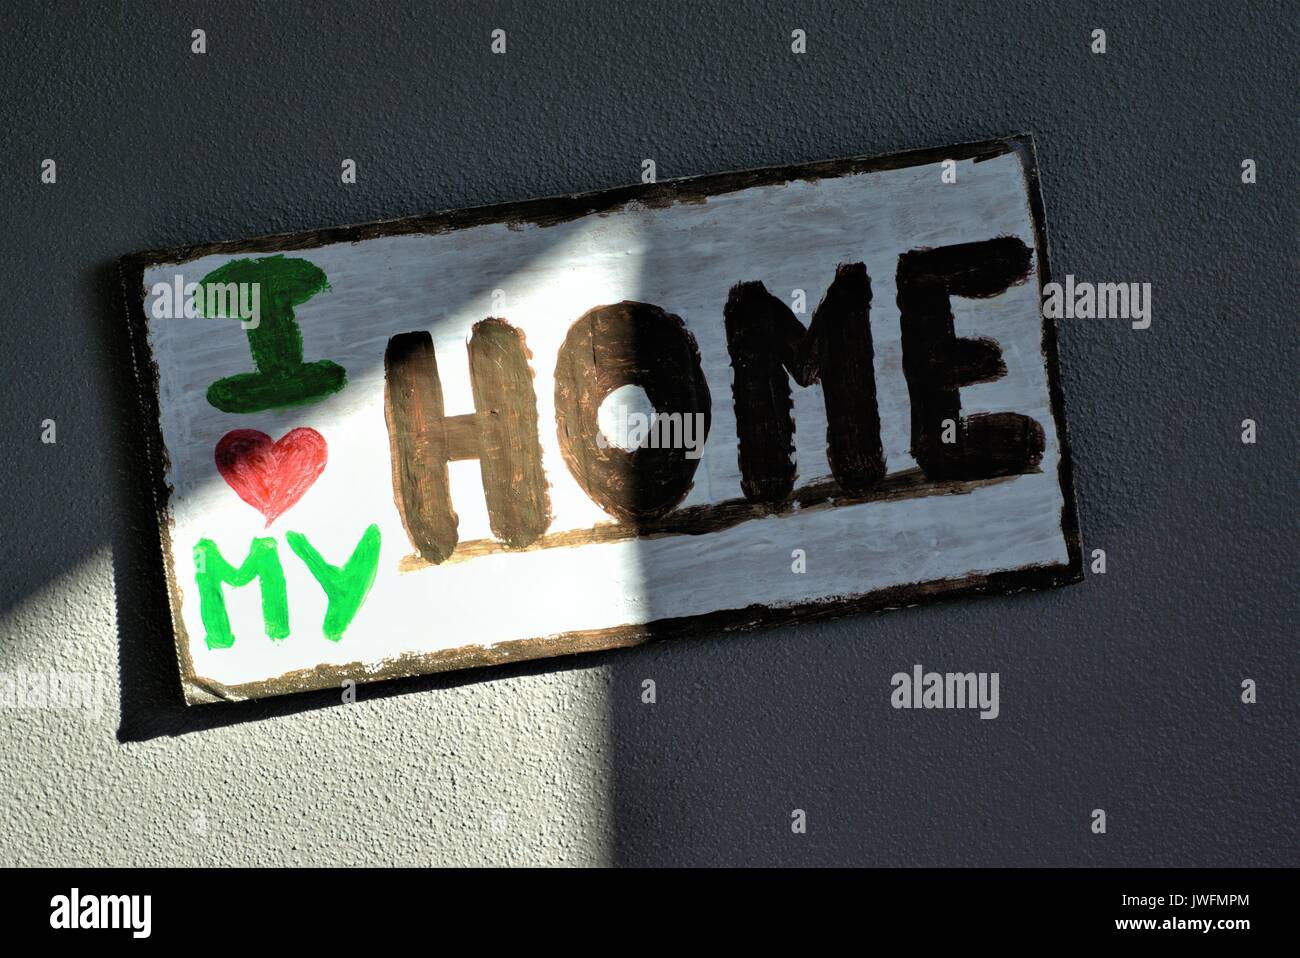 Pareti in legno segno "Amo la mia casa". Forma di cuore rappresenta la parola amore Foto Stock